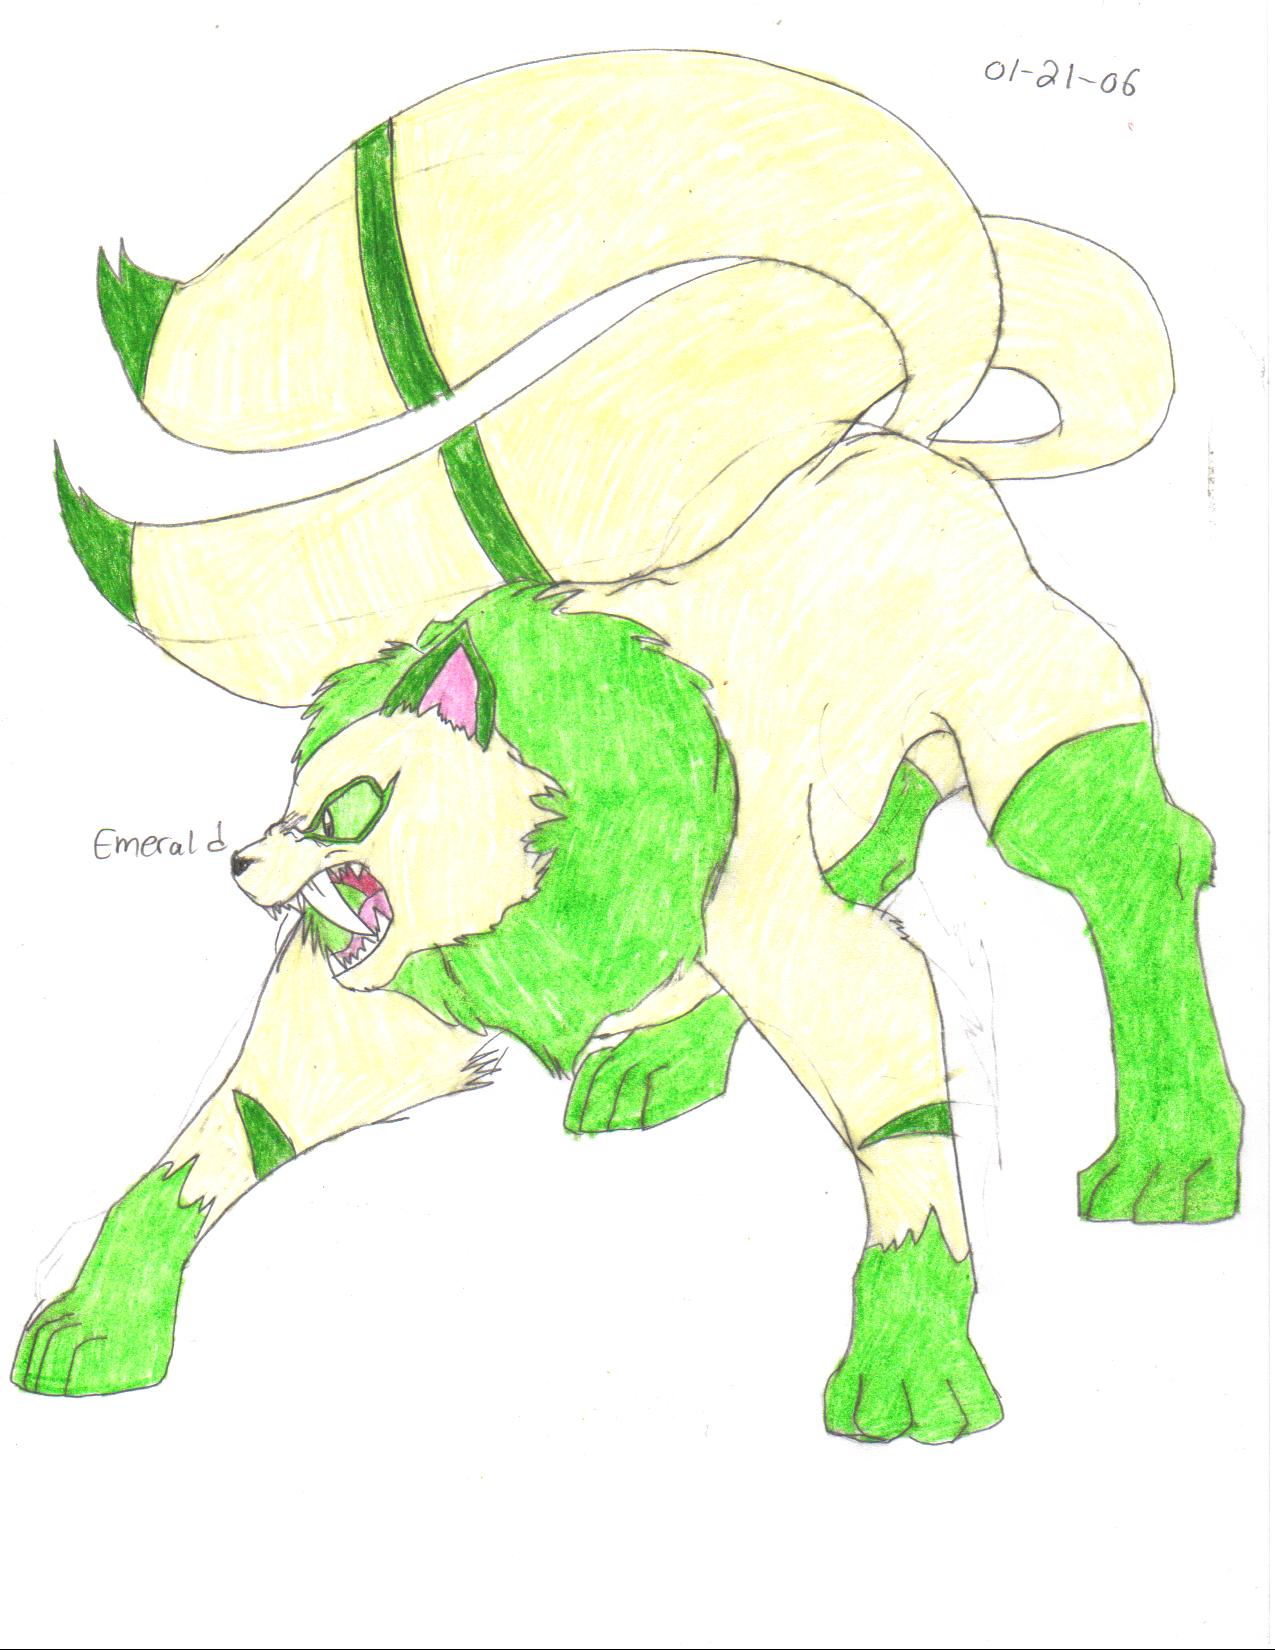 Emerald (big form) by crocdragon89